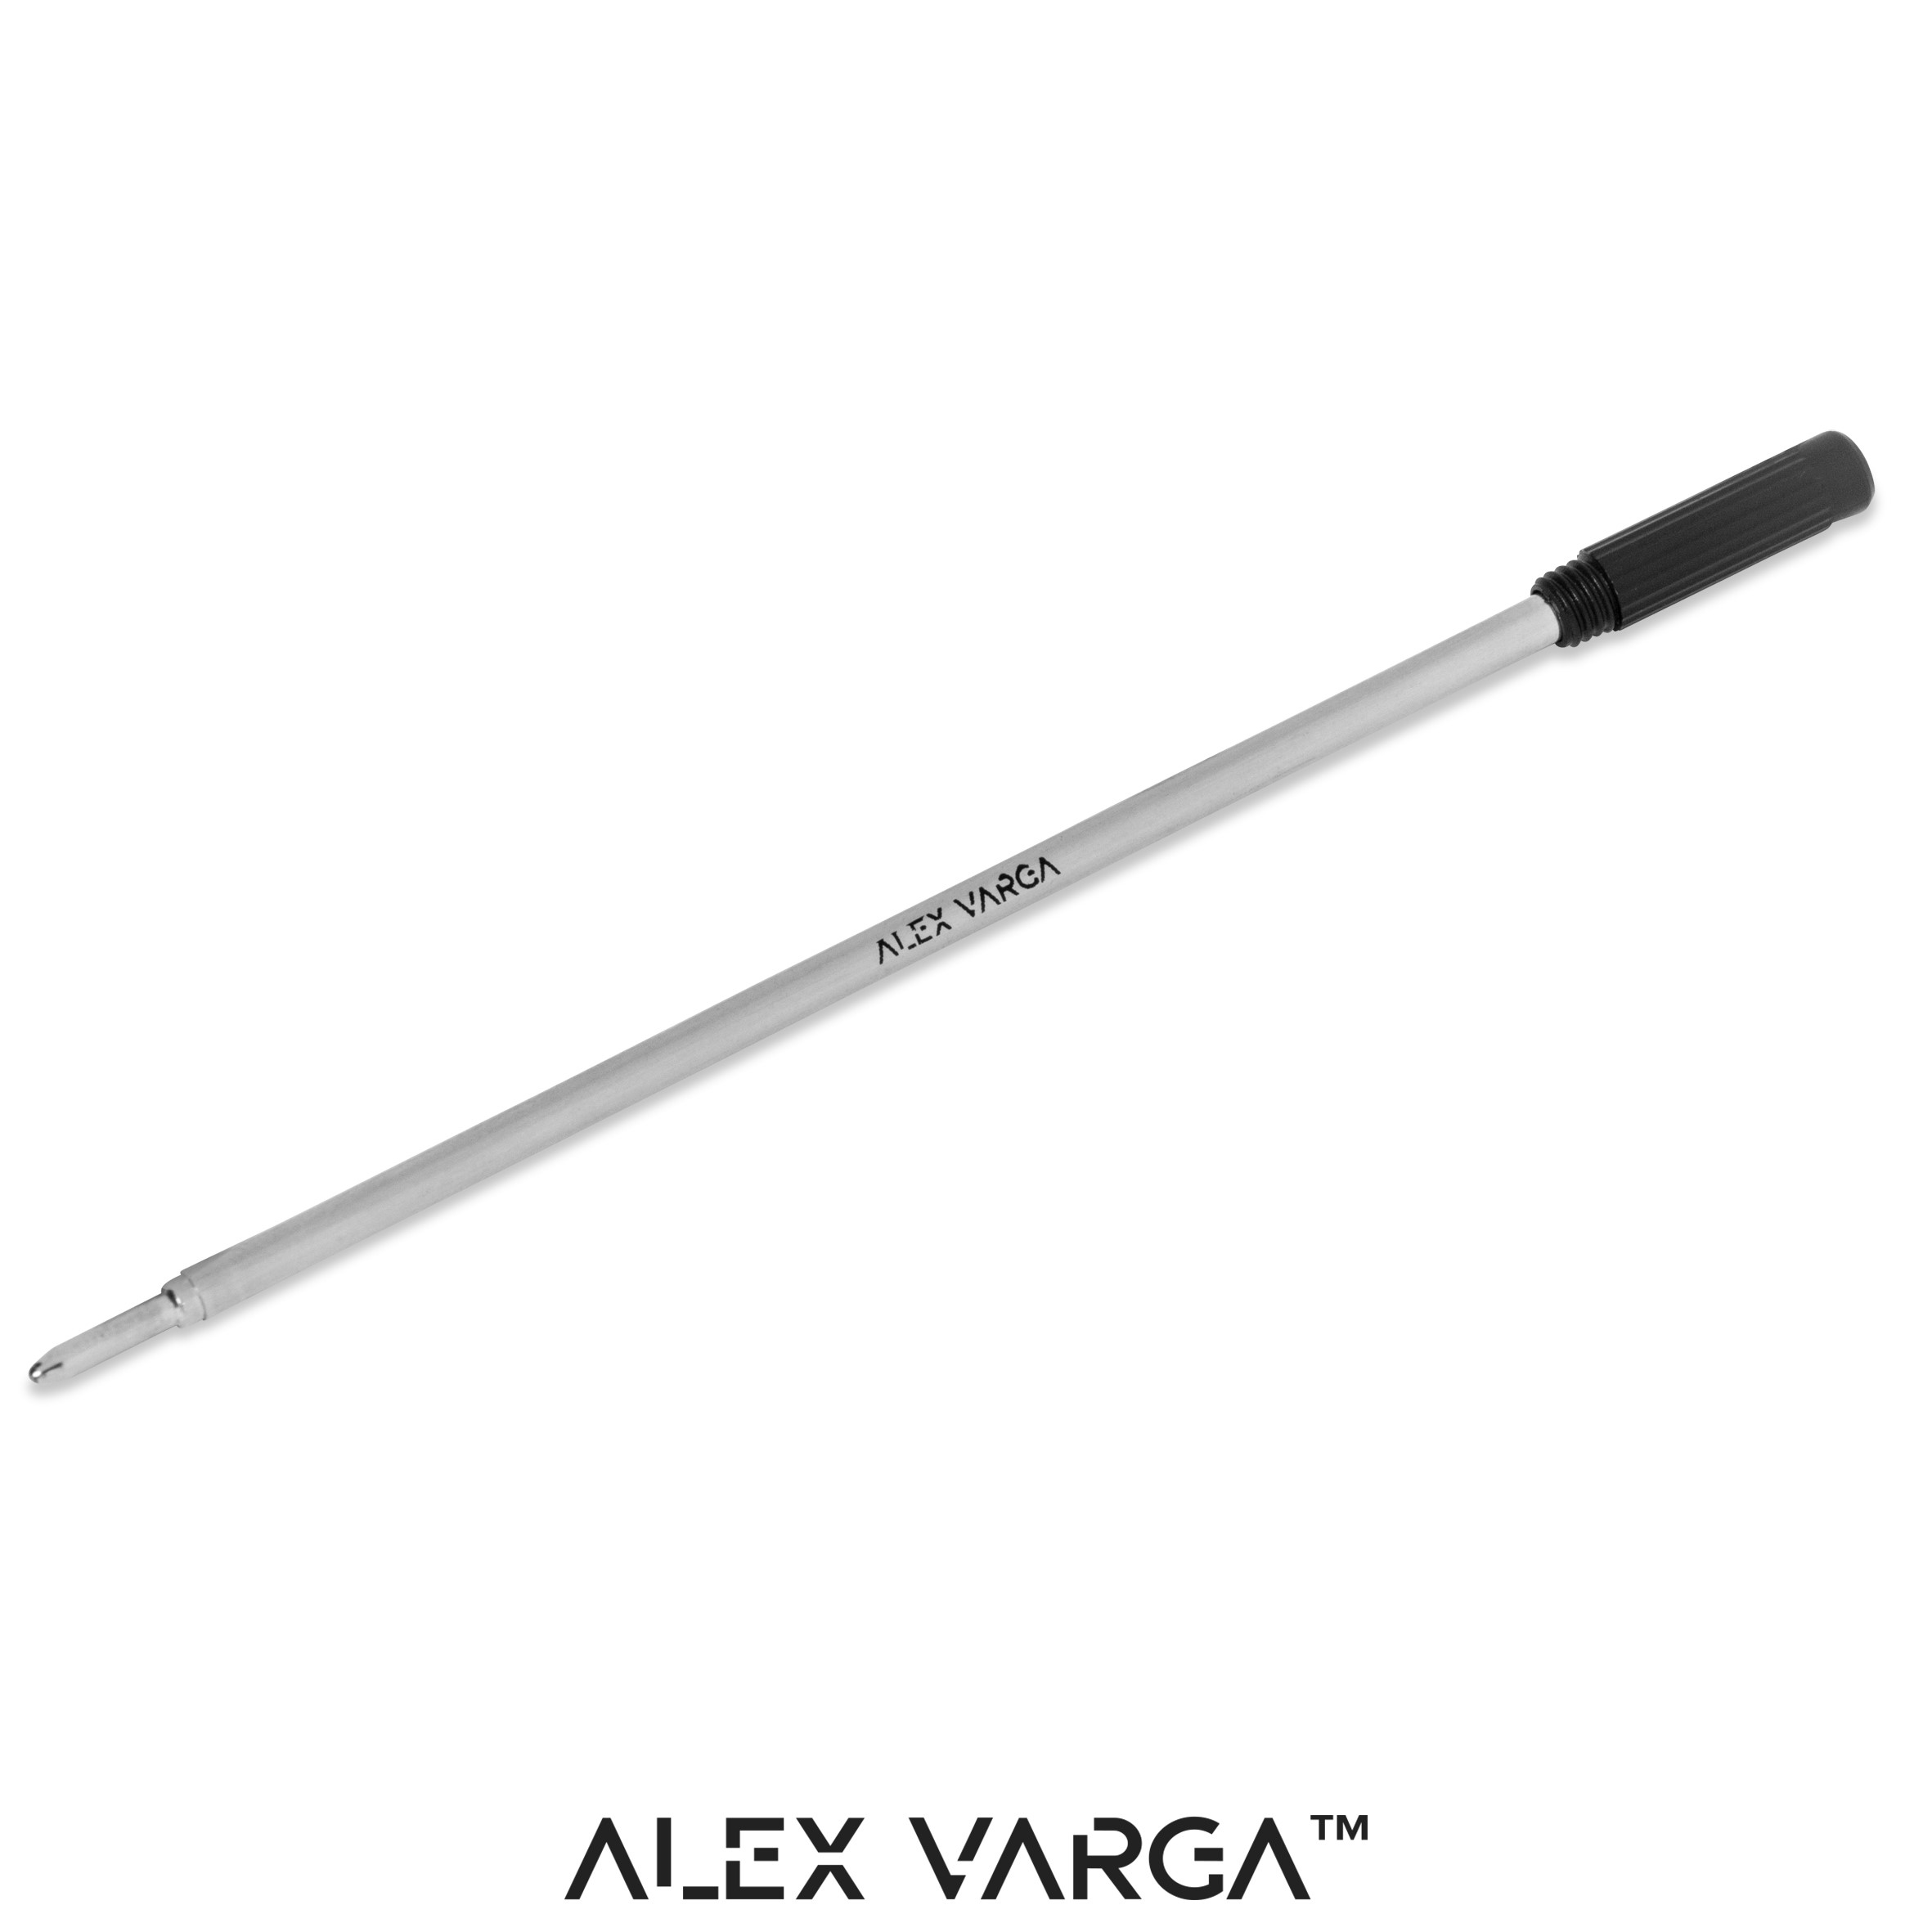 Alex Varga Slim Twist Ball Pen Refill